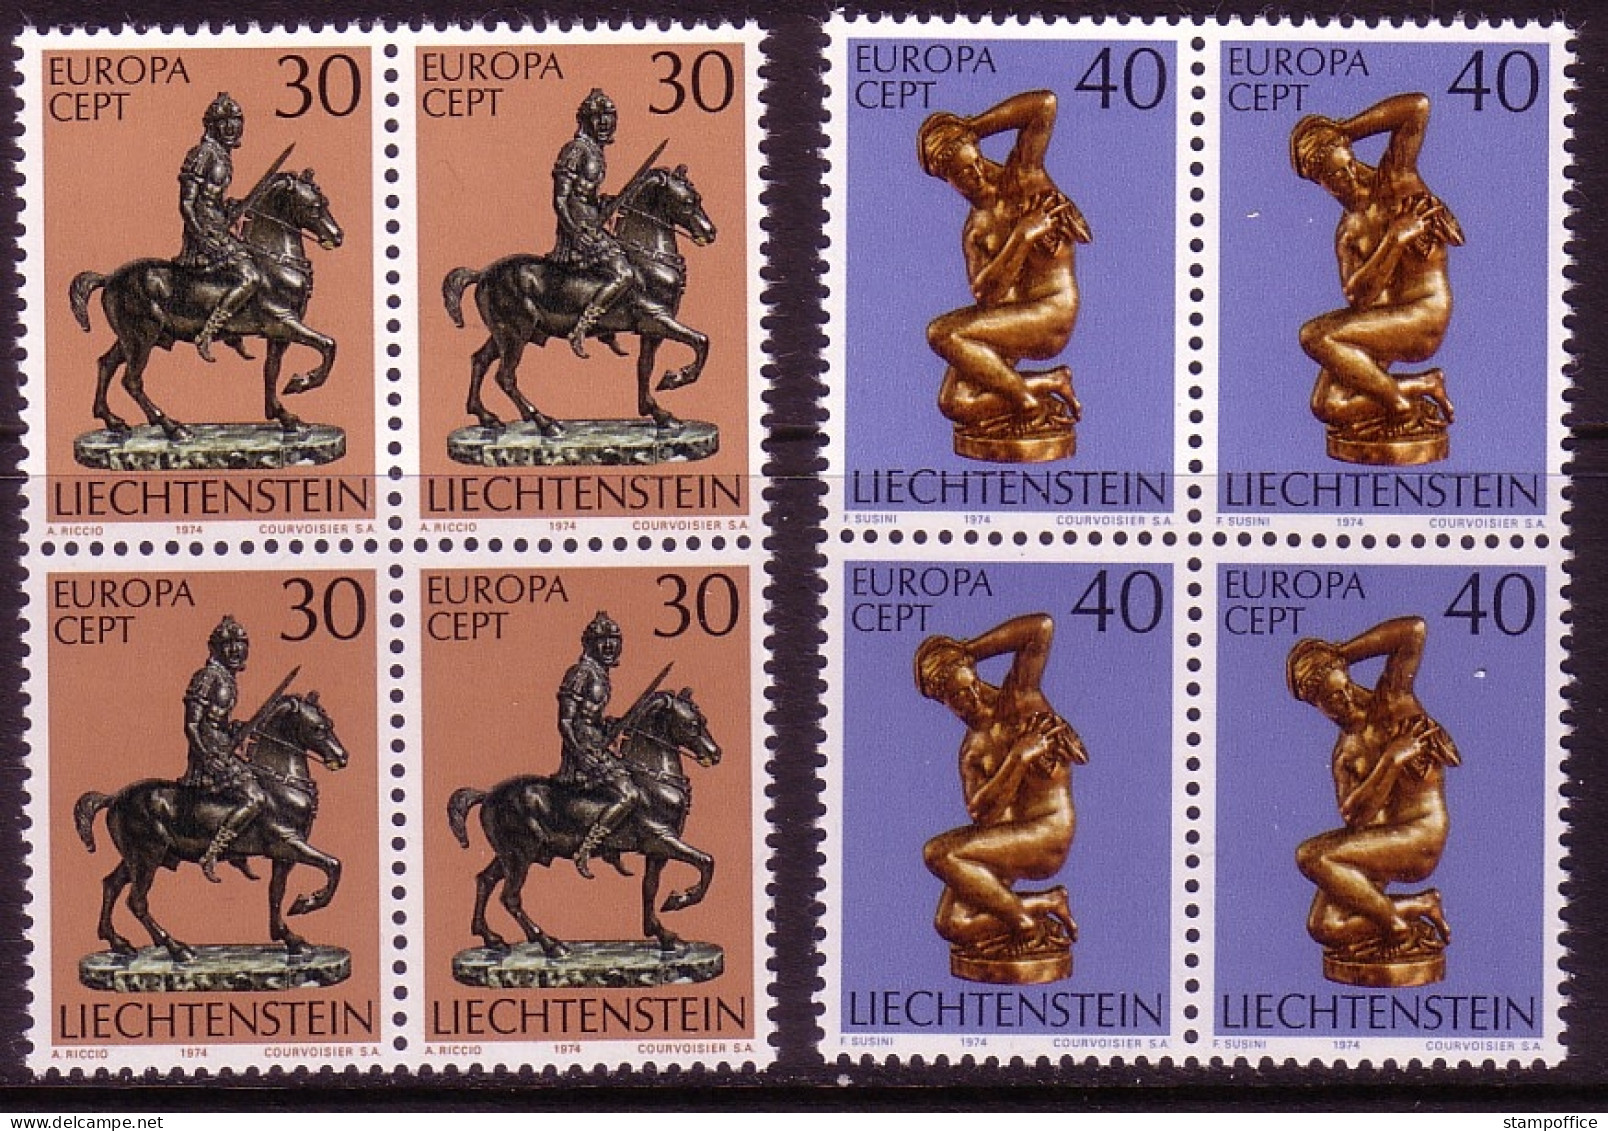 LIECHTENSTEIN MI-NR. 600-601 POSTFRISCH(MINT) 4er BLOCK EUROPA 1974 SKULPTUREN - 1974